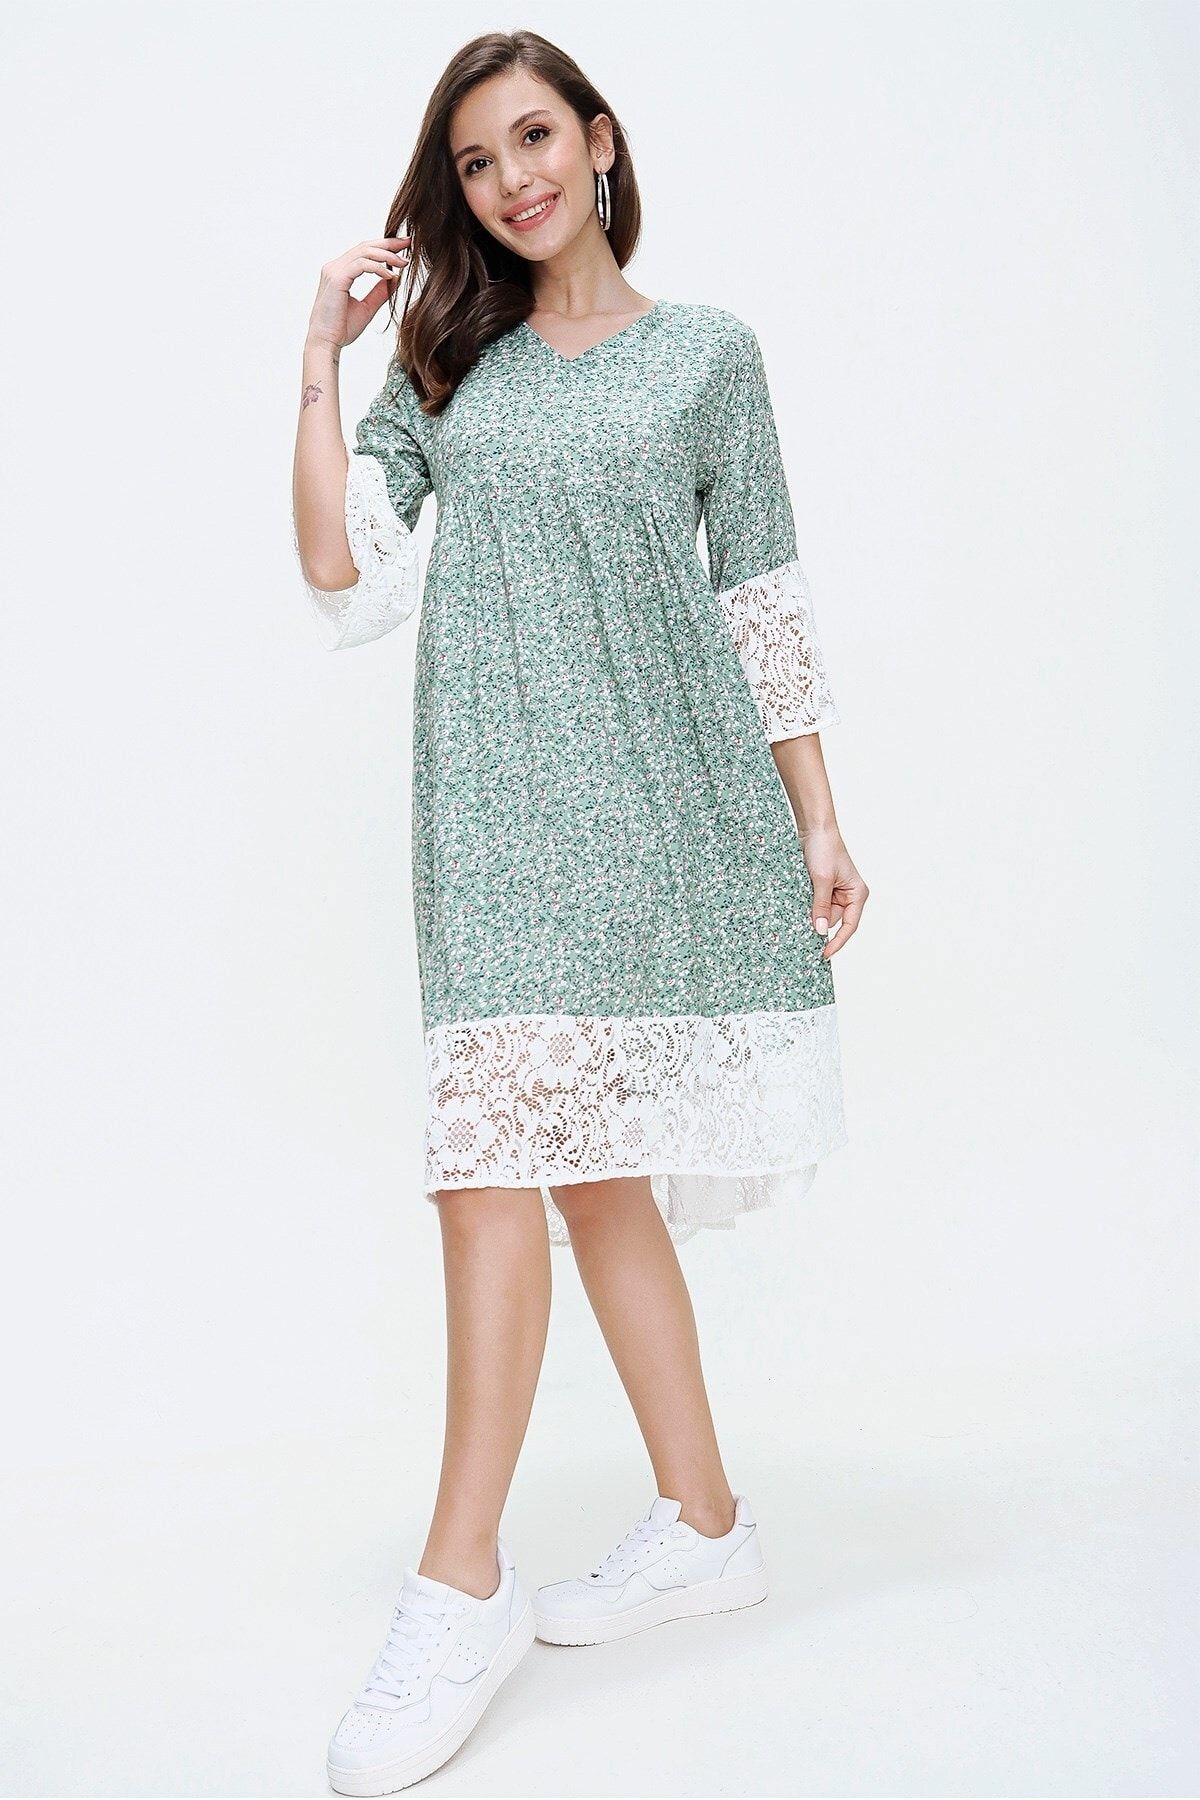 By Saygı Kadın Yeşil Çiçek Desen Dantel Detaylı Elbise S-20Y2060057